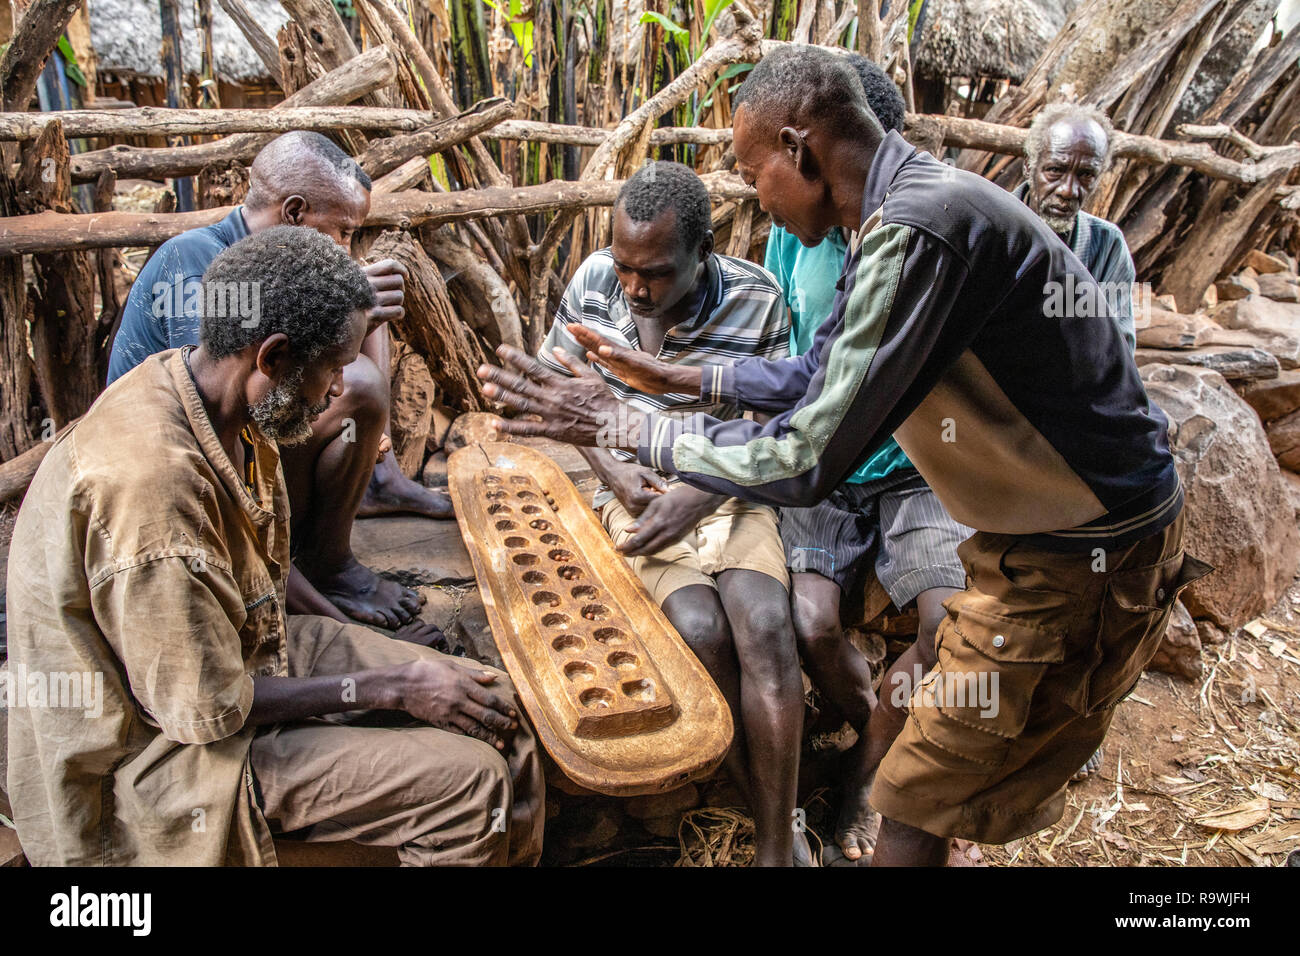 Gebeta - Khám phá trò chơi tưởng như đã bị lãng quên này của bộ tộc Konso, Ethiopia - Gebeta. Với hơn 1000 năm lịch sử, trò chơi cờ tướng cổ nhất thế giới này đang chờ đón bạn để khám phá và trải nghiệm. Trở thành một chiến thần với Gebeta!